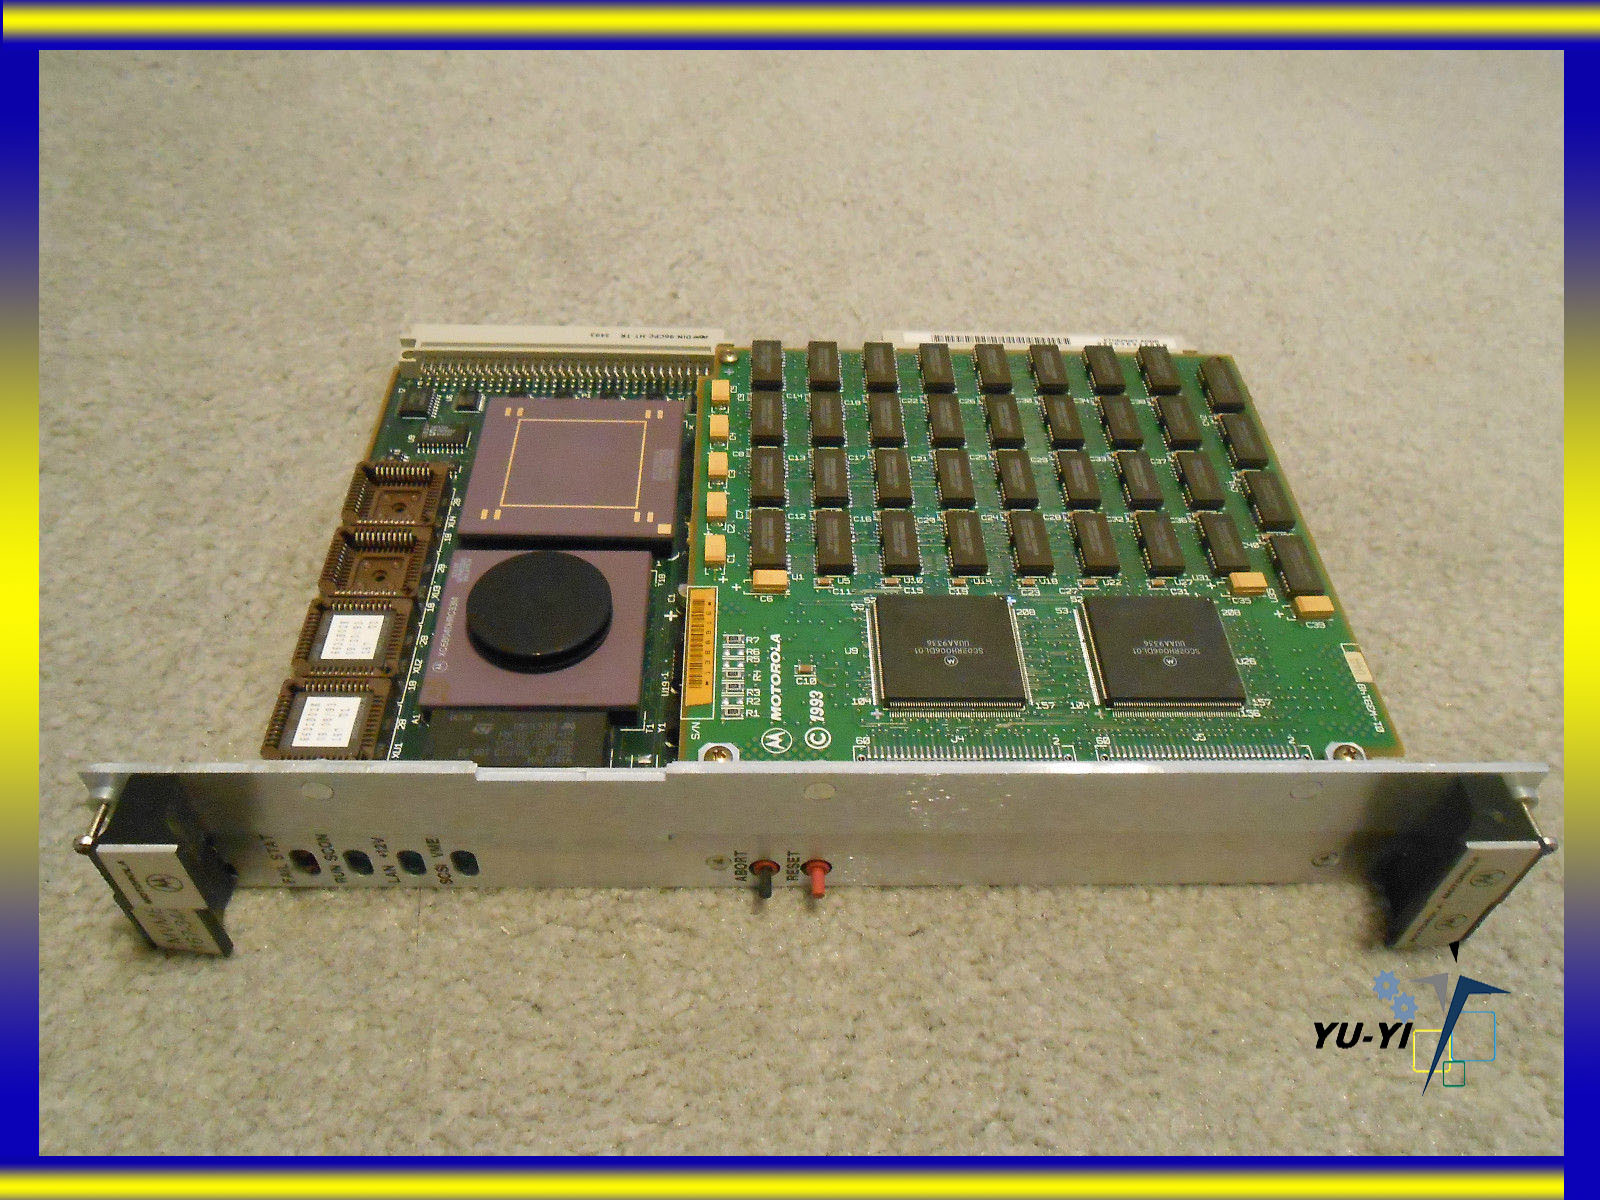 MOTOROLA MVME167-034A 68040 CPU, 33MHZ WITH 32MB PARITY MEMORY, 1 LAN INTERFACE